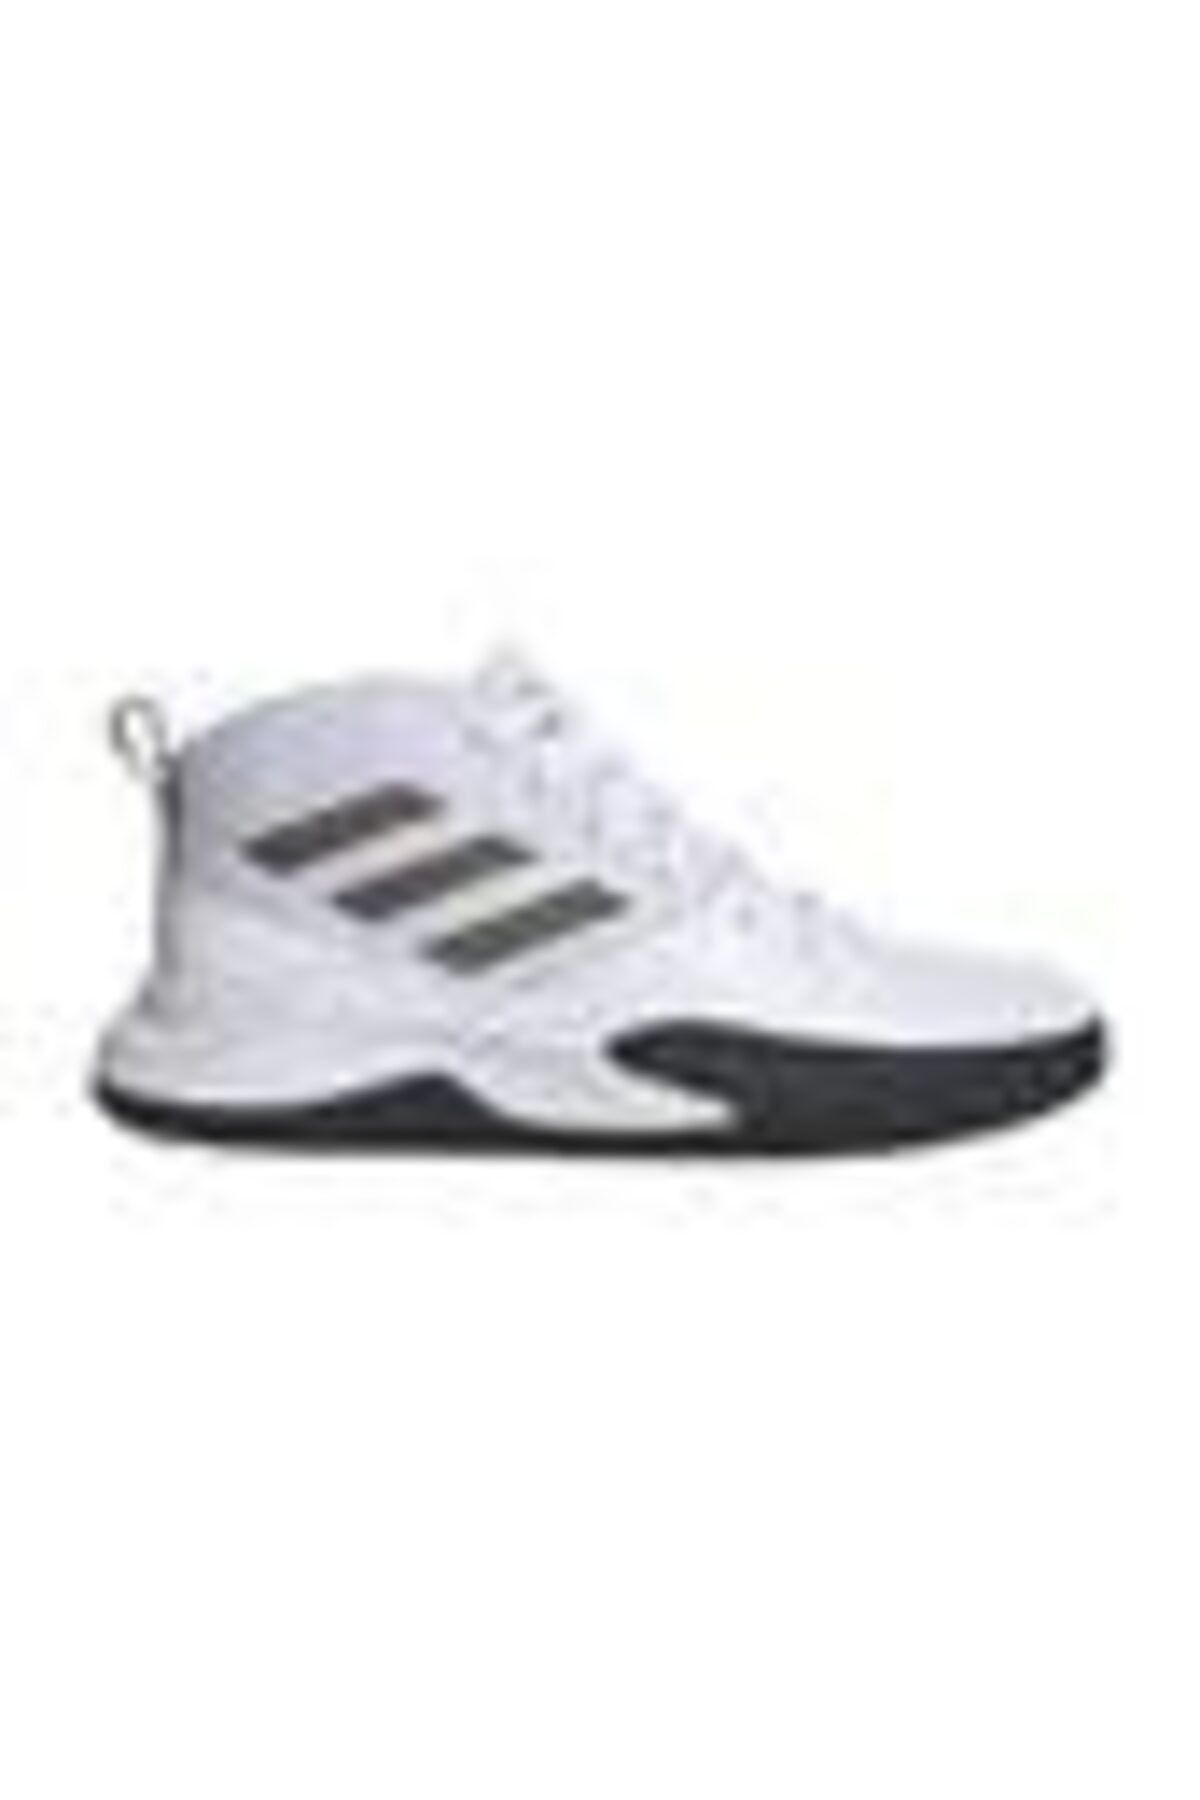 adidas Ownthegame K Wide Çocuk Basketbol Ayakkabısı Ef0310